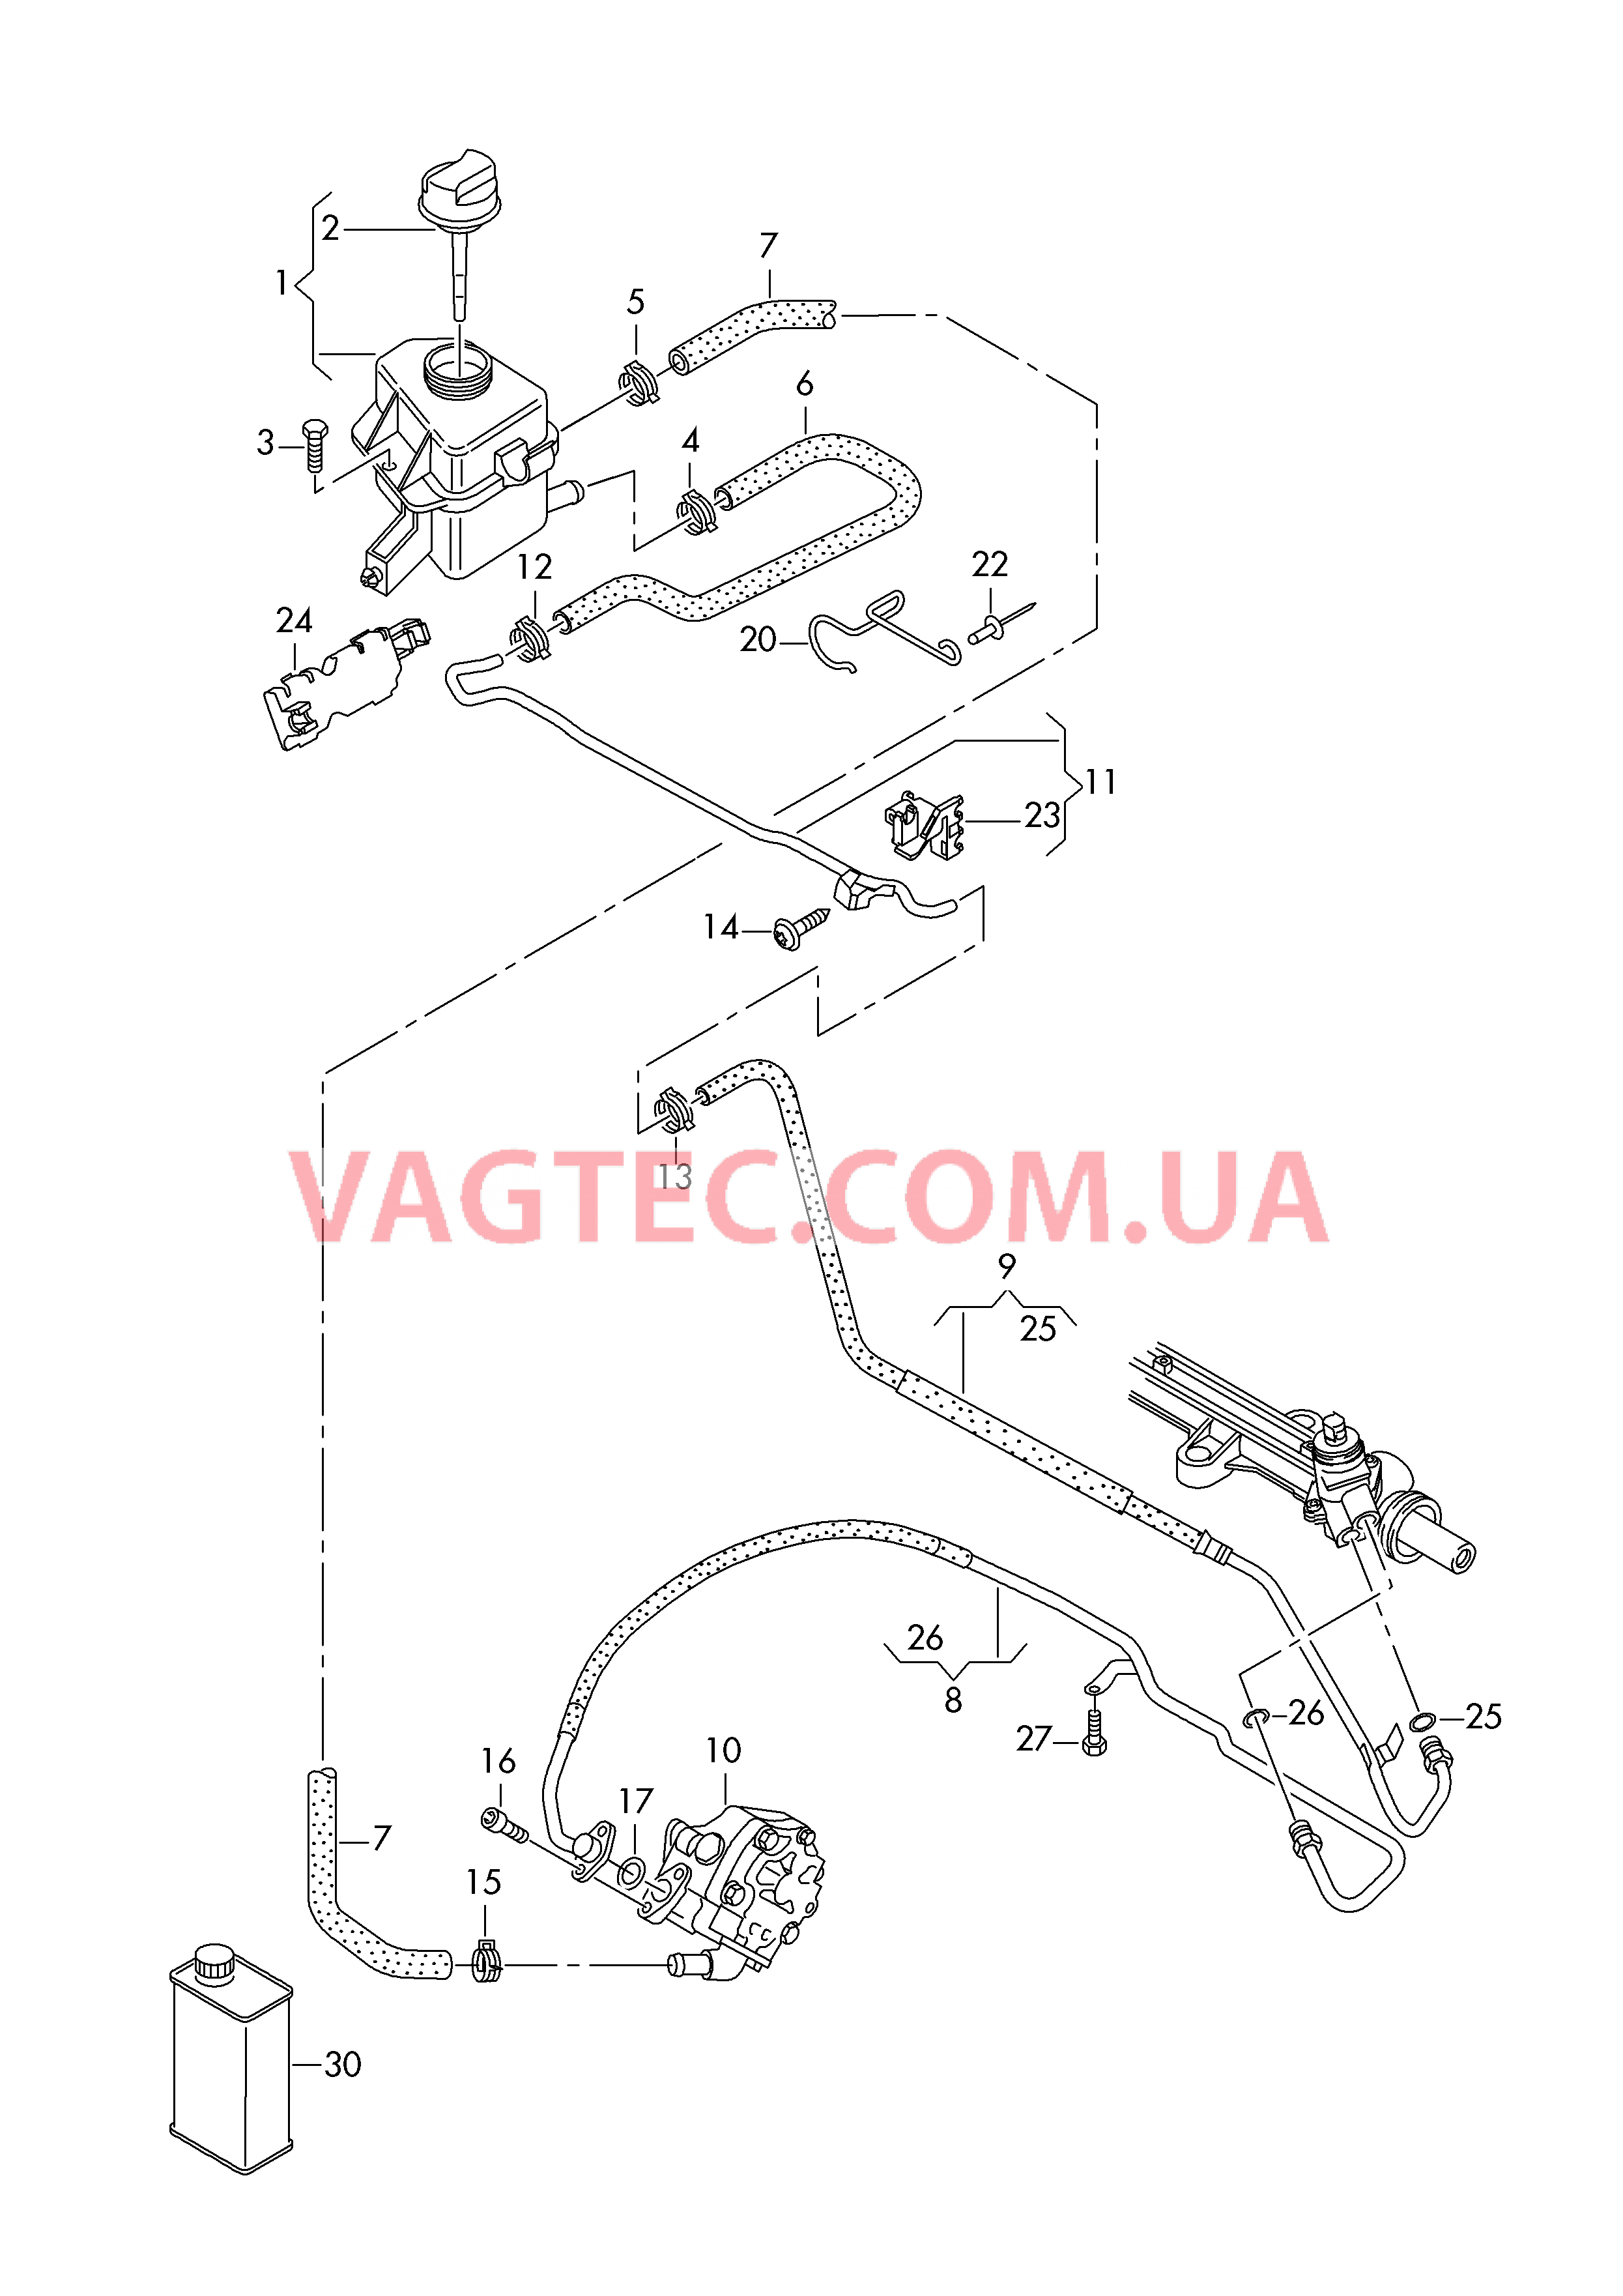 Масляный бачок с соединительными деталями, шлангами  для ГУPа  для VOLKSWAGEN Transporter 2019